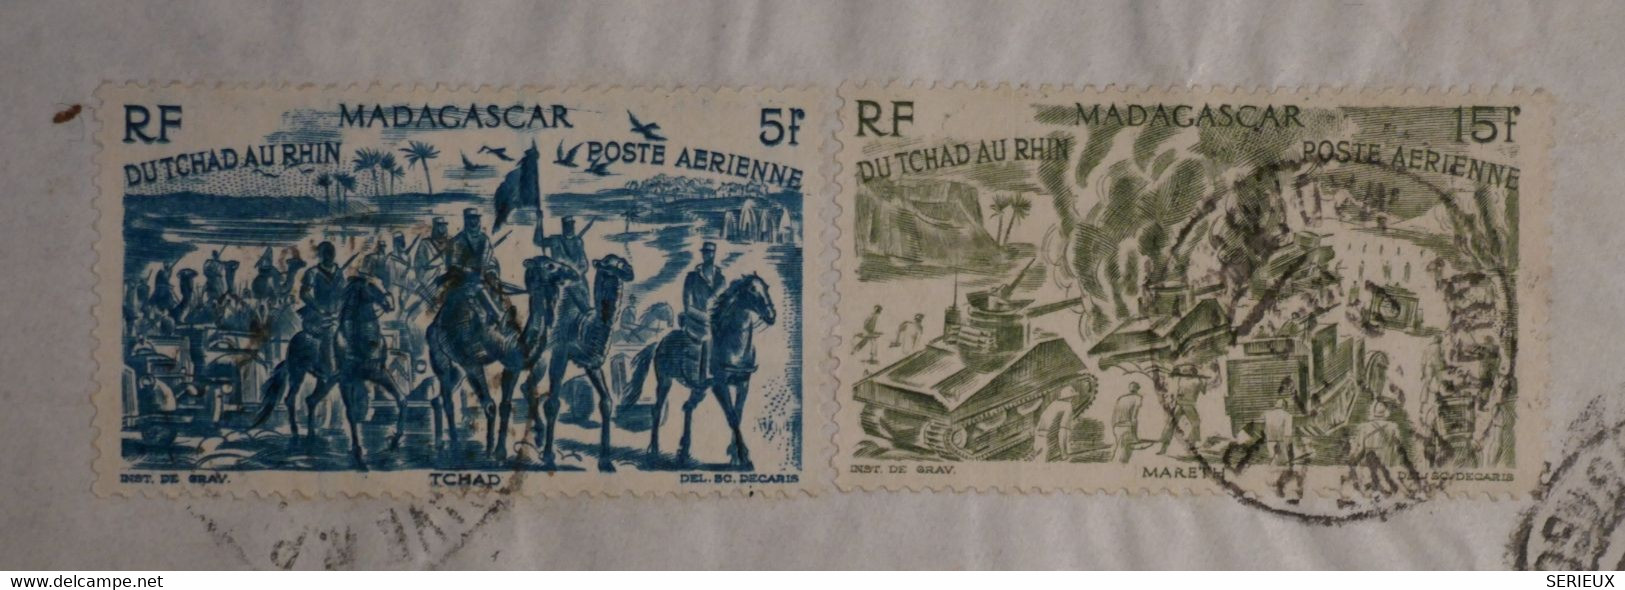 AP7 MADAGASCAR   BELLE LETTRE 1959 PAR AVIONB  POUR RIBERAC   FRANCE  +N°68 + +AFFRANCH.INTERESSANT - Airmail